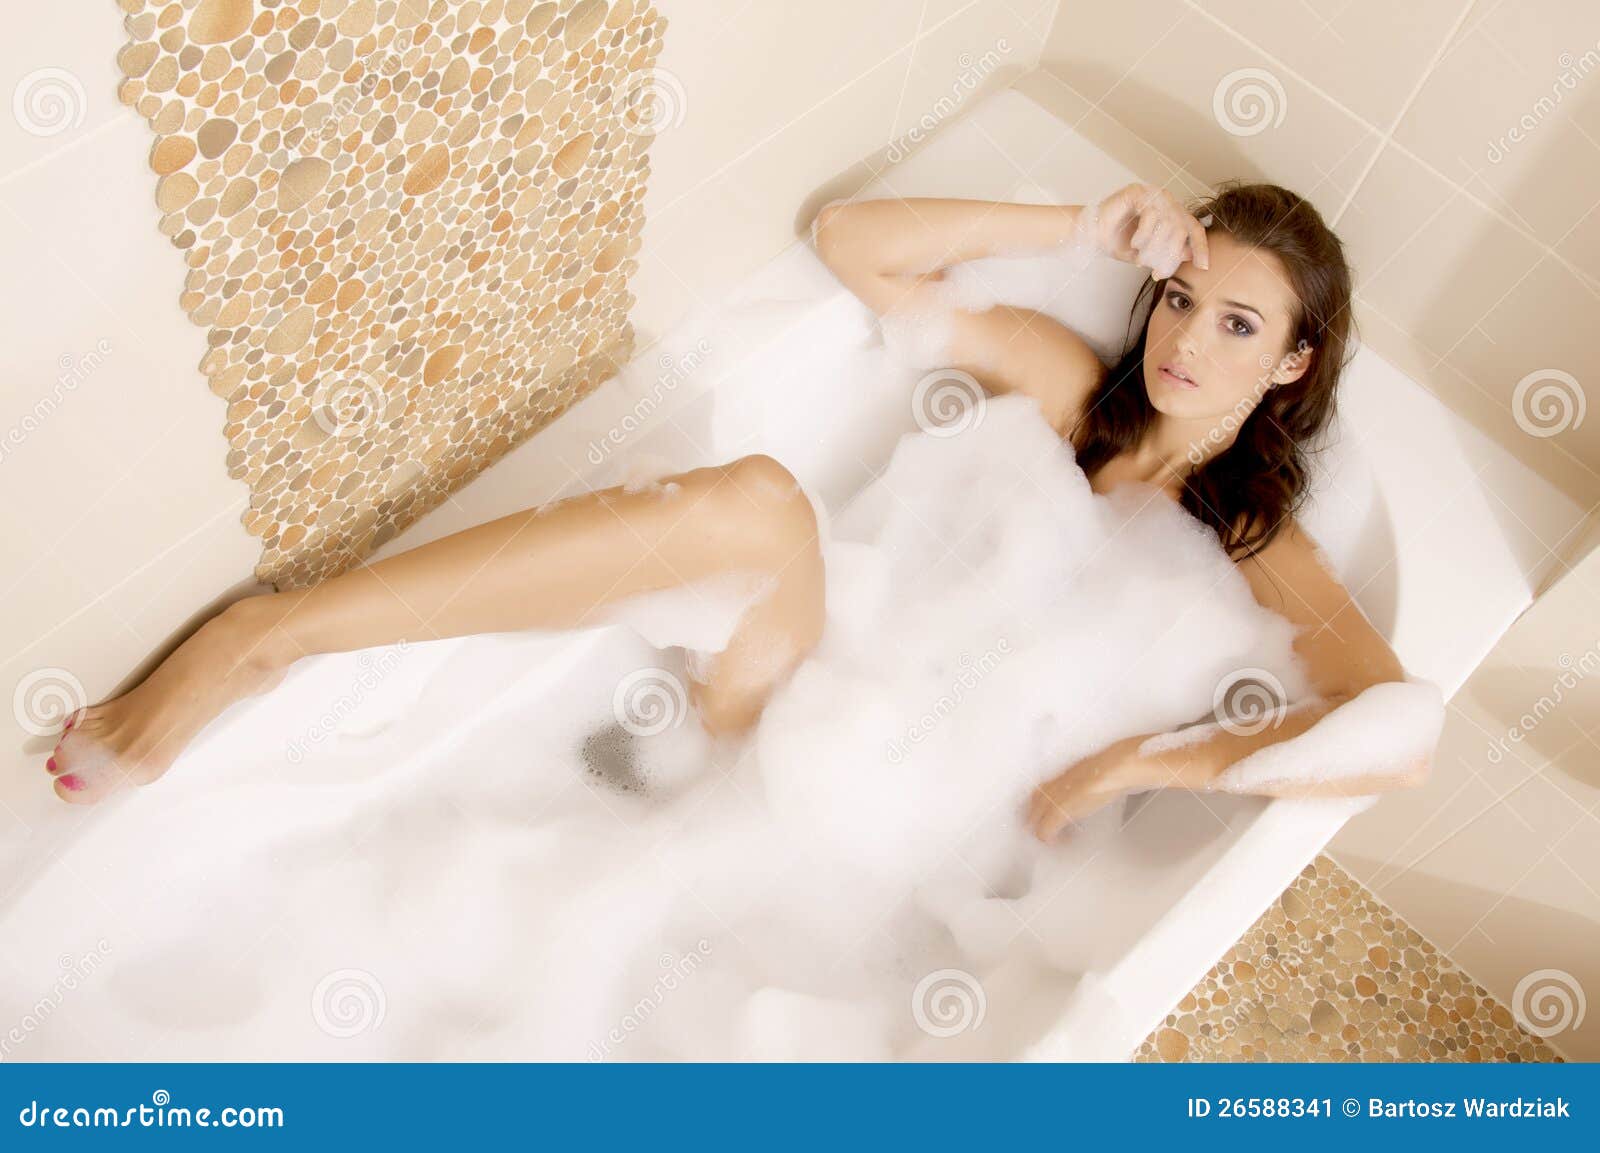 эротика голых девочек в ванной фото 13